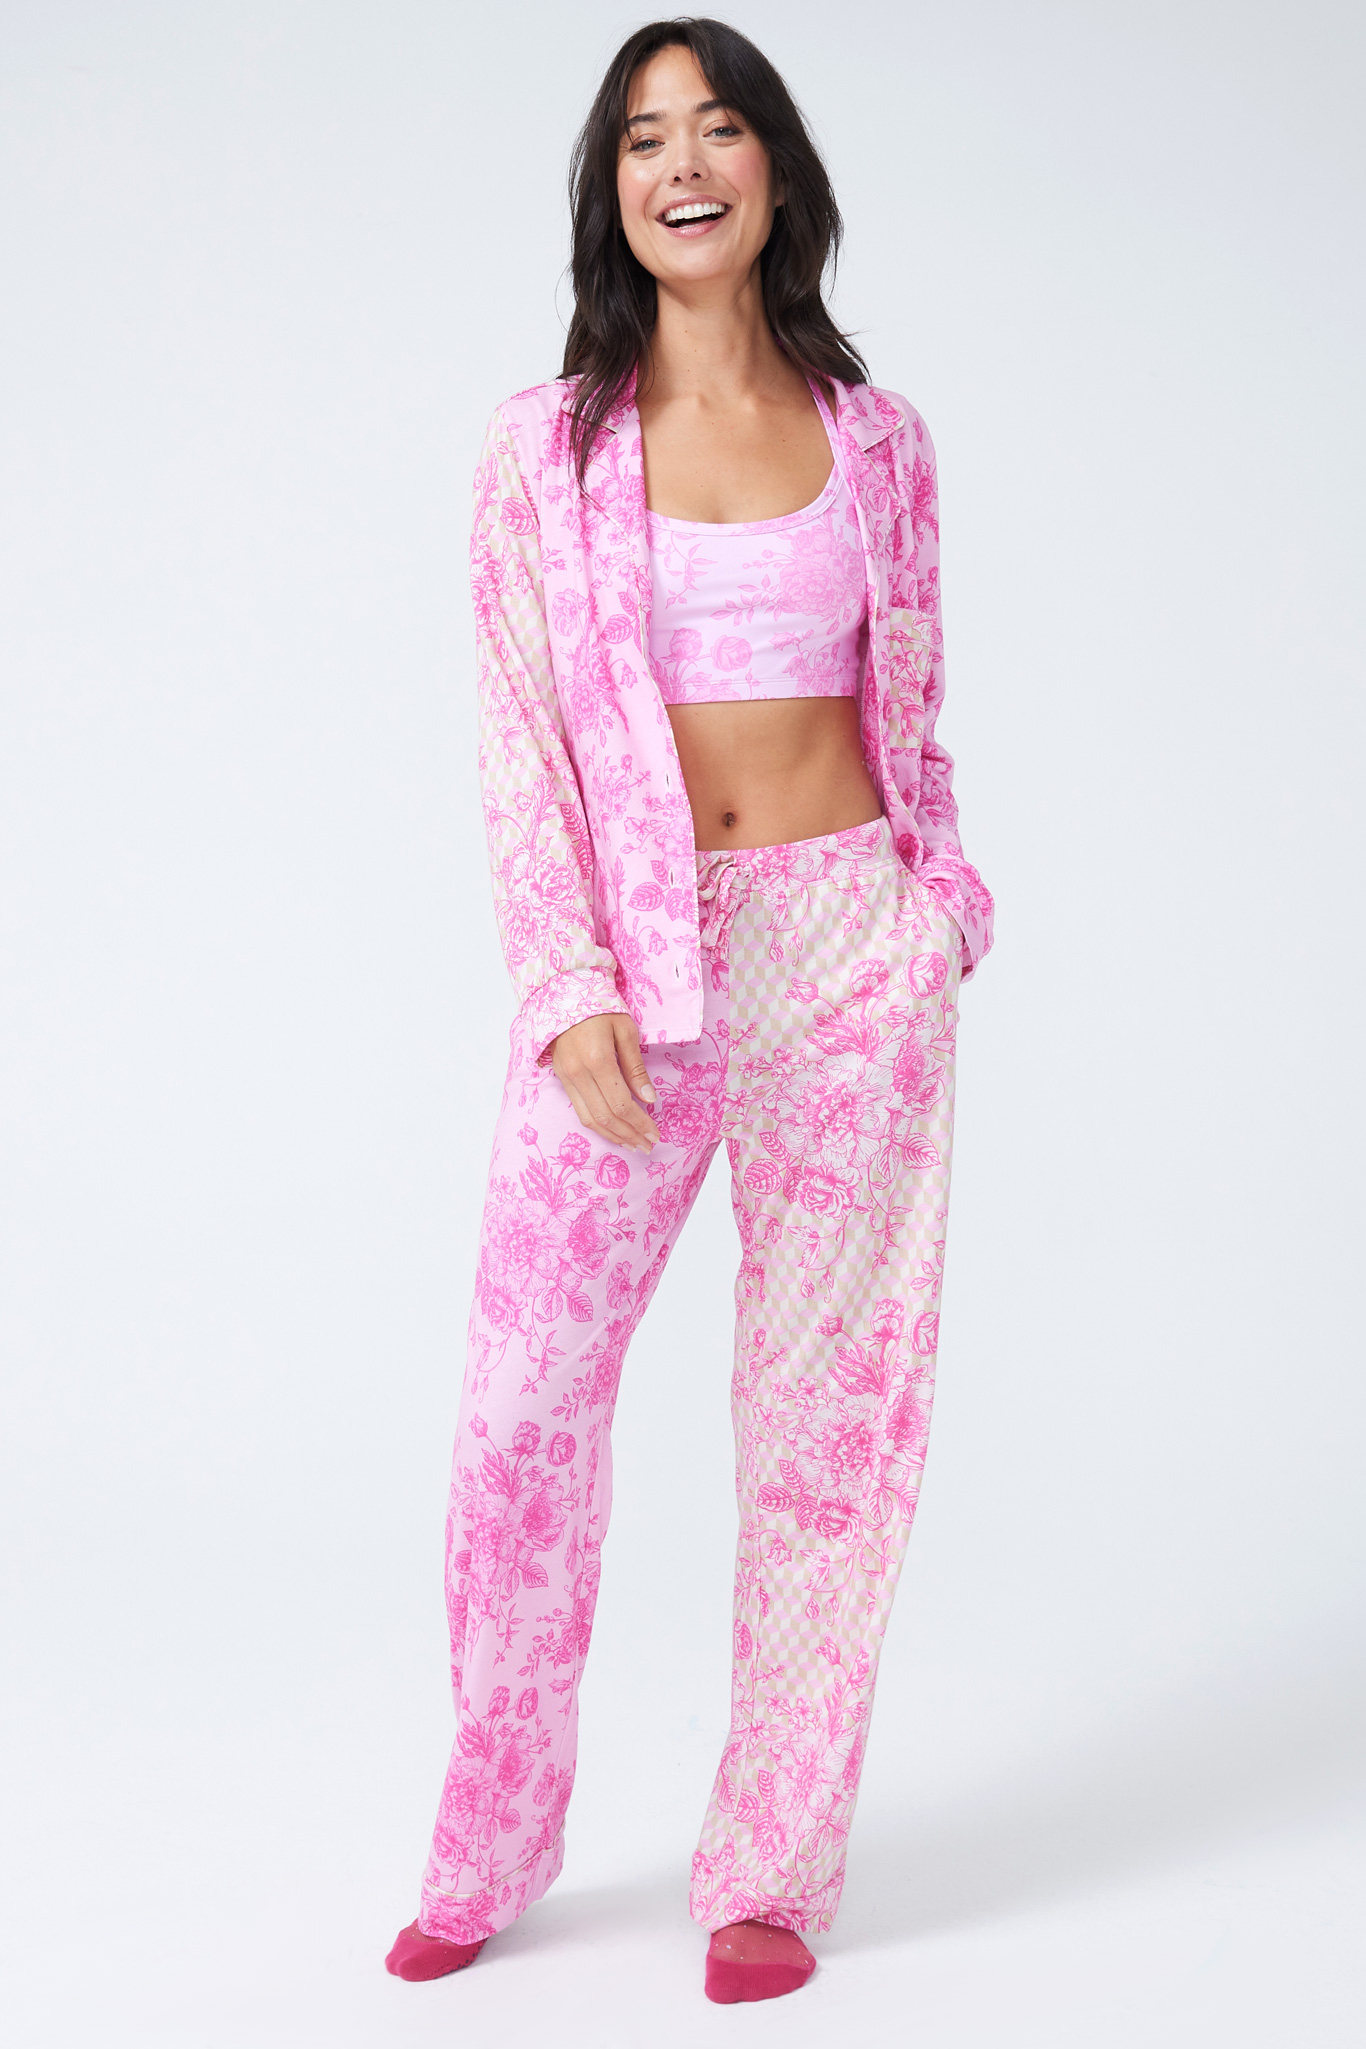 Brand New Bras N Things Pyjamas Ladies sleepwear - women Clothing - size 10